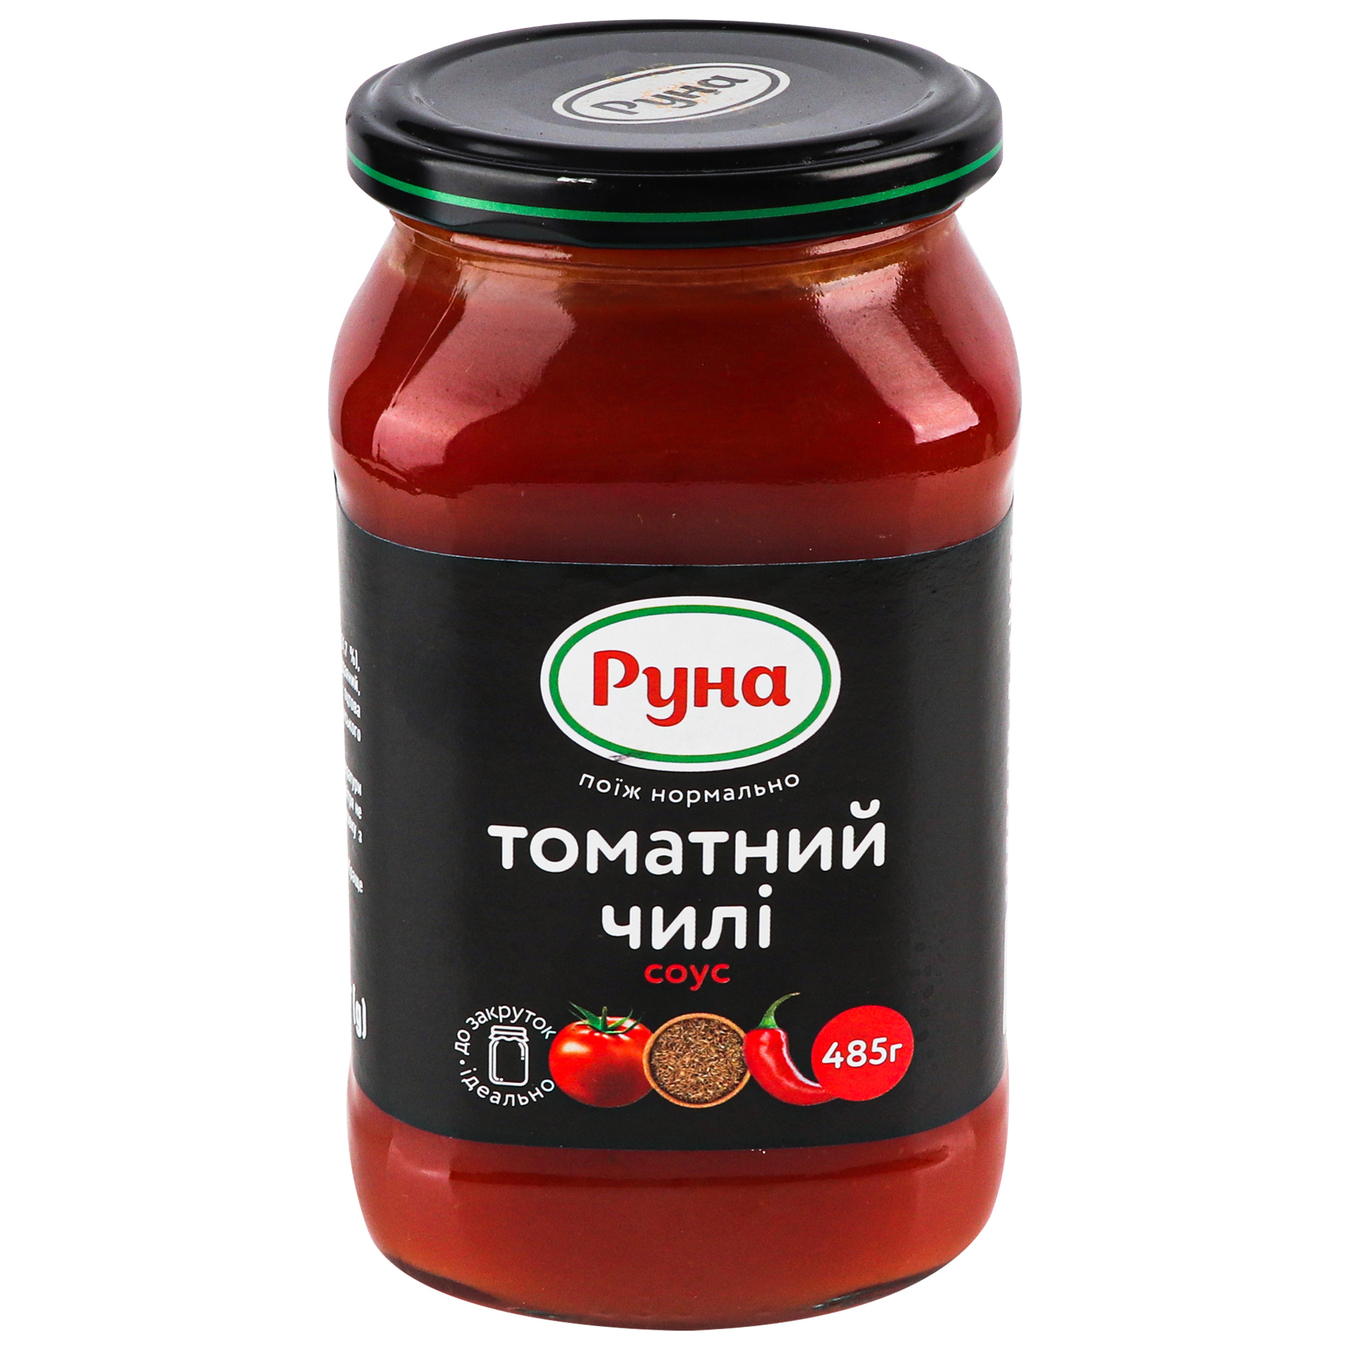 Runa Chili tomato sauce 485g 2